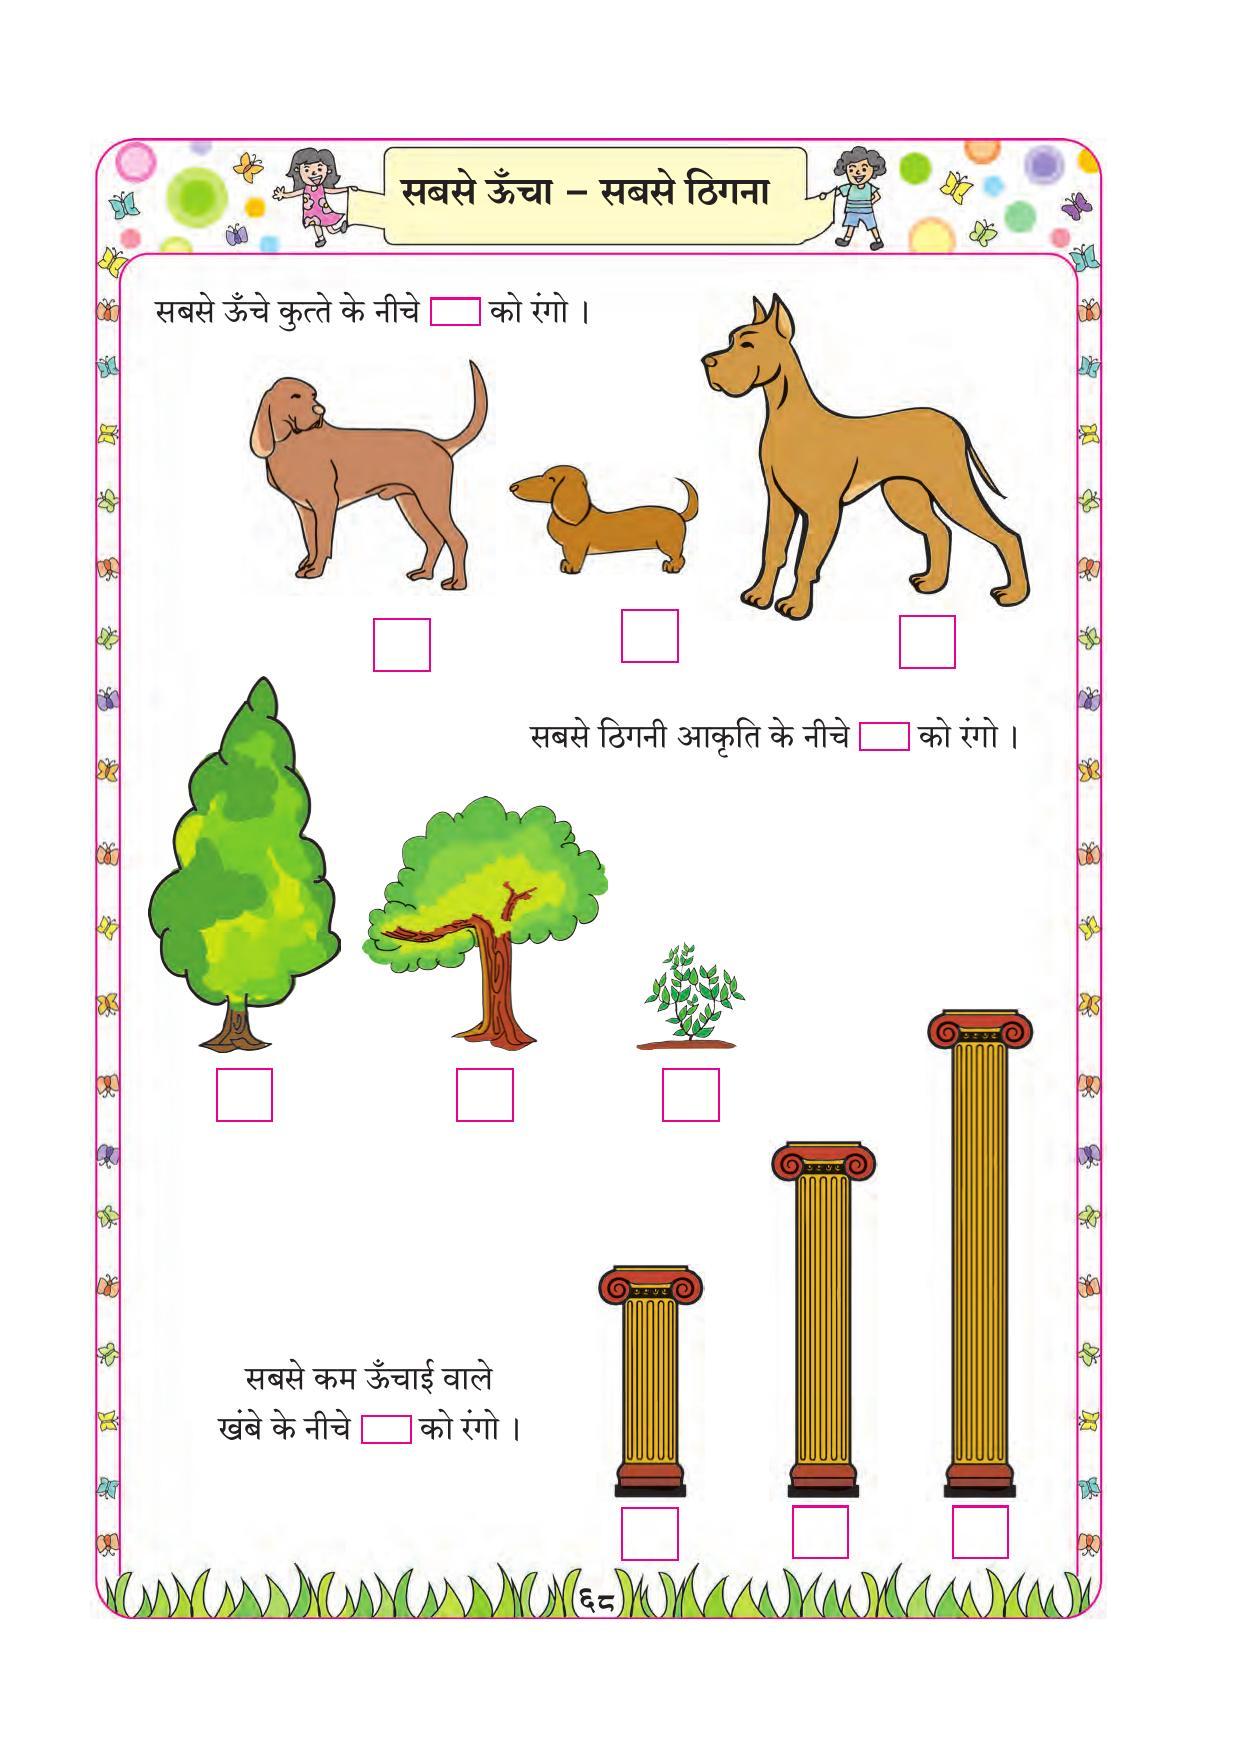 Maharashtra Board Class 1 Maths (Hindi Medium) Textbook - Page 78